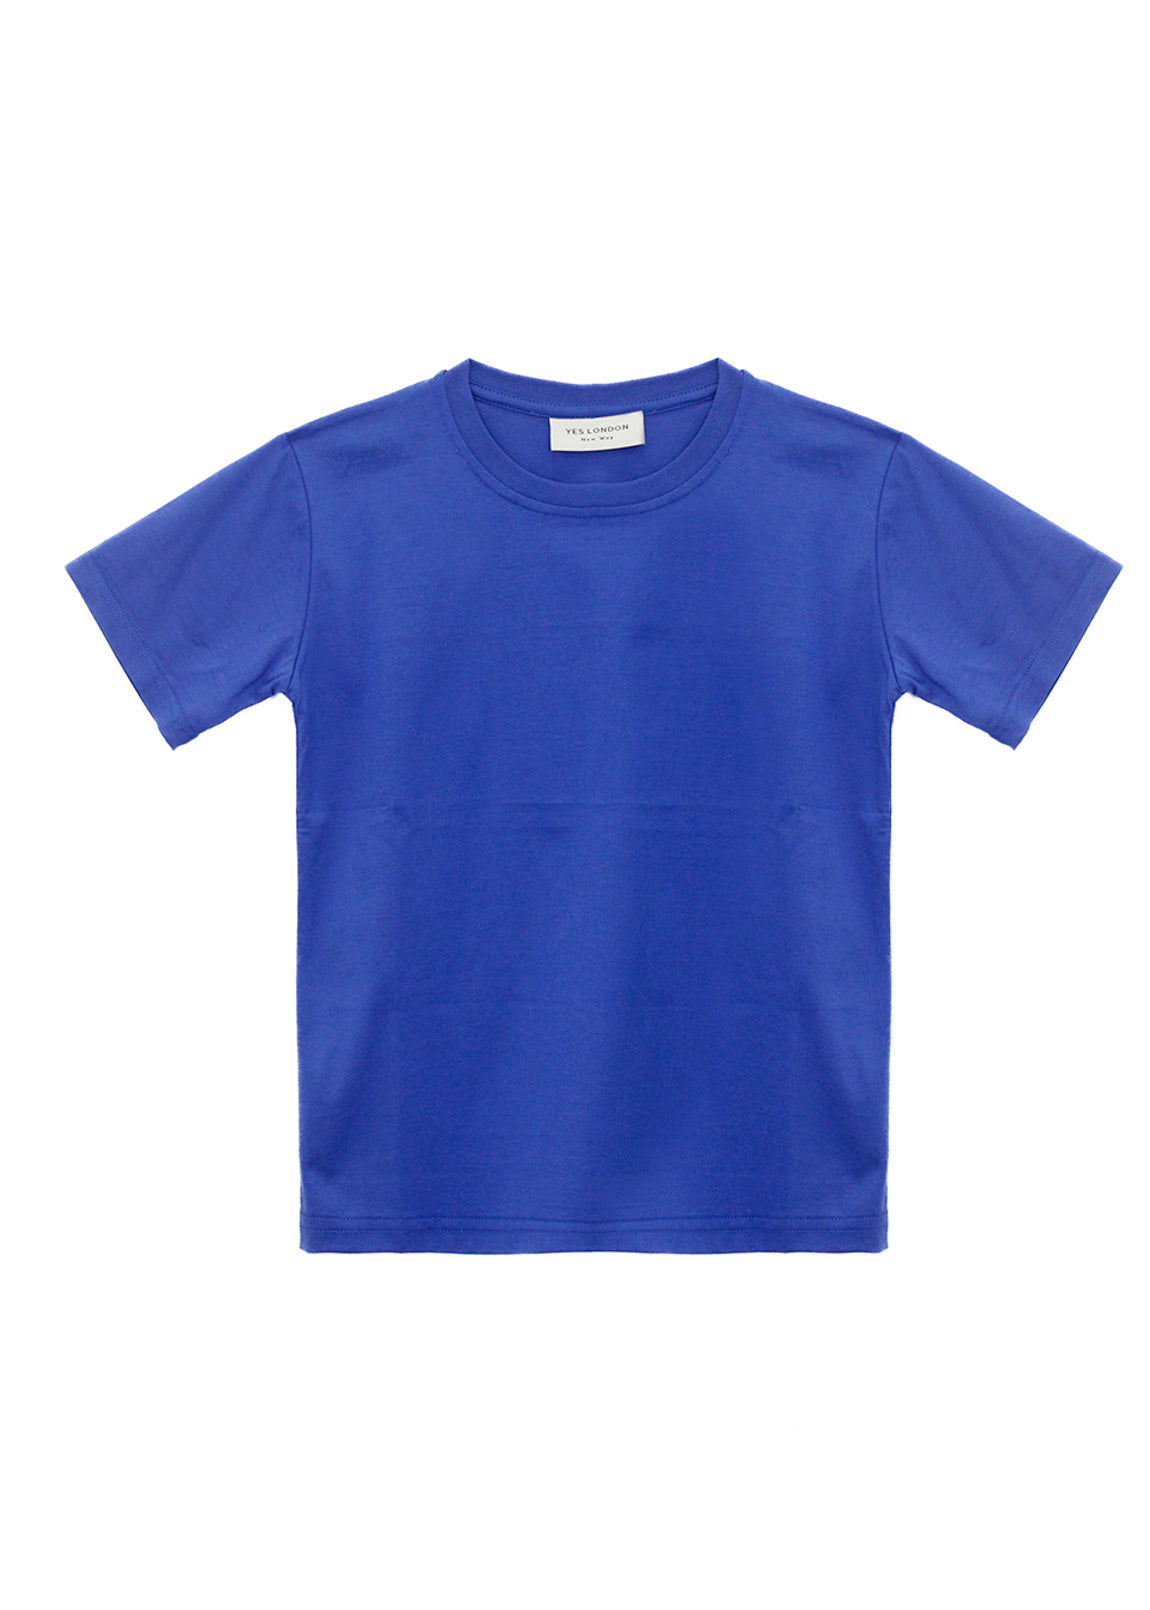 Yes London T-shirt Bluette Filo di Scozia per Bambini (fronte)